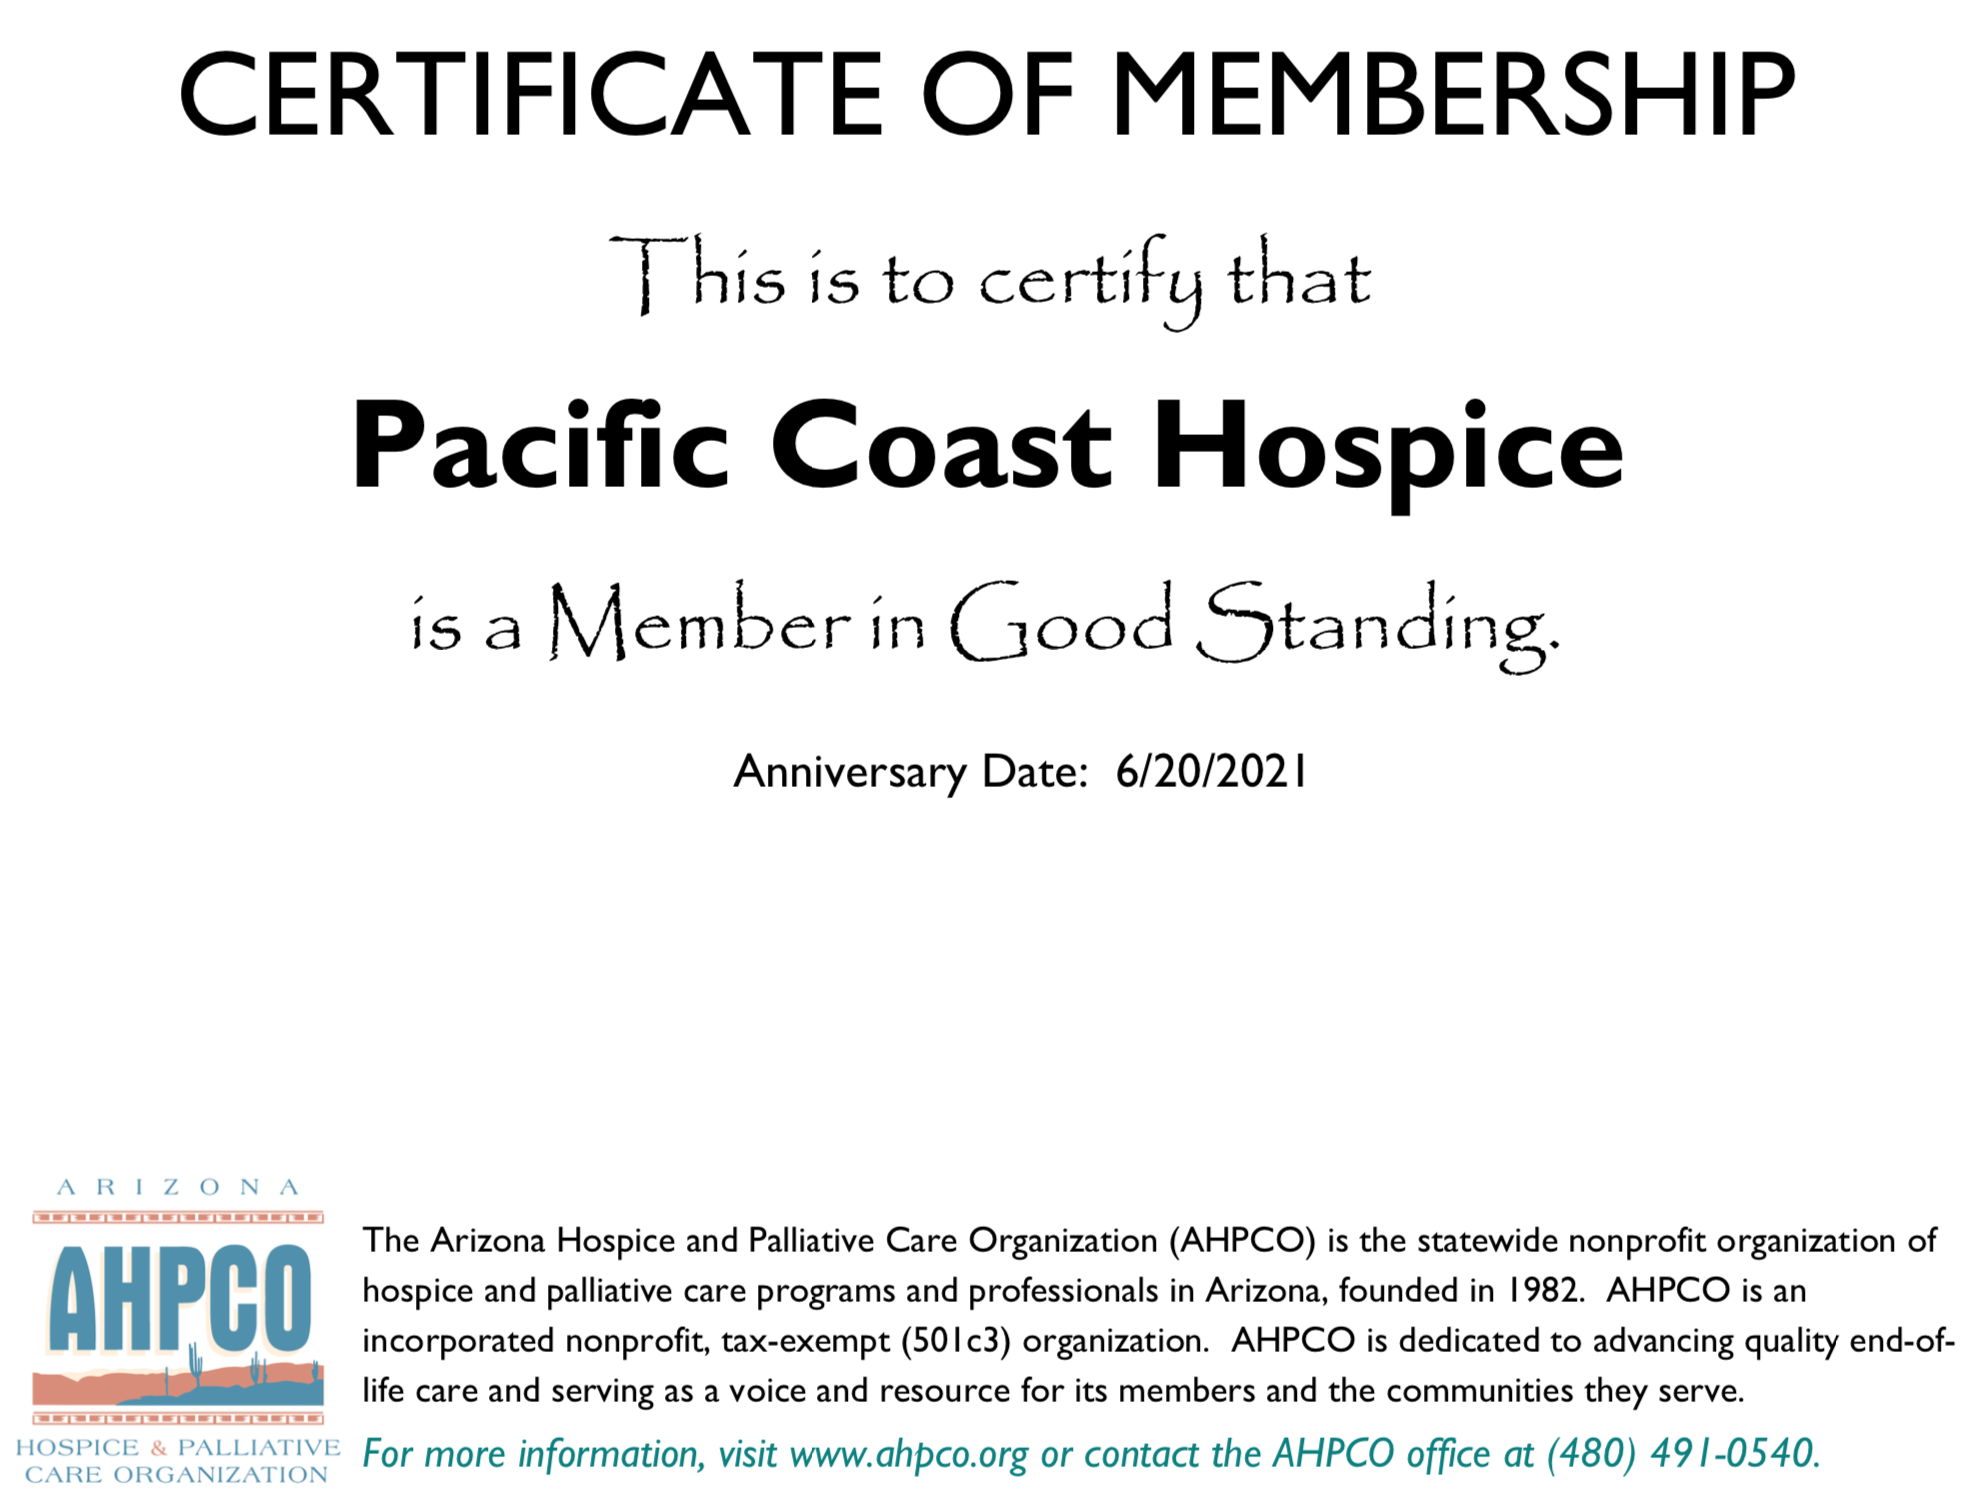 APHCO Membership Certificate